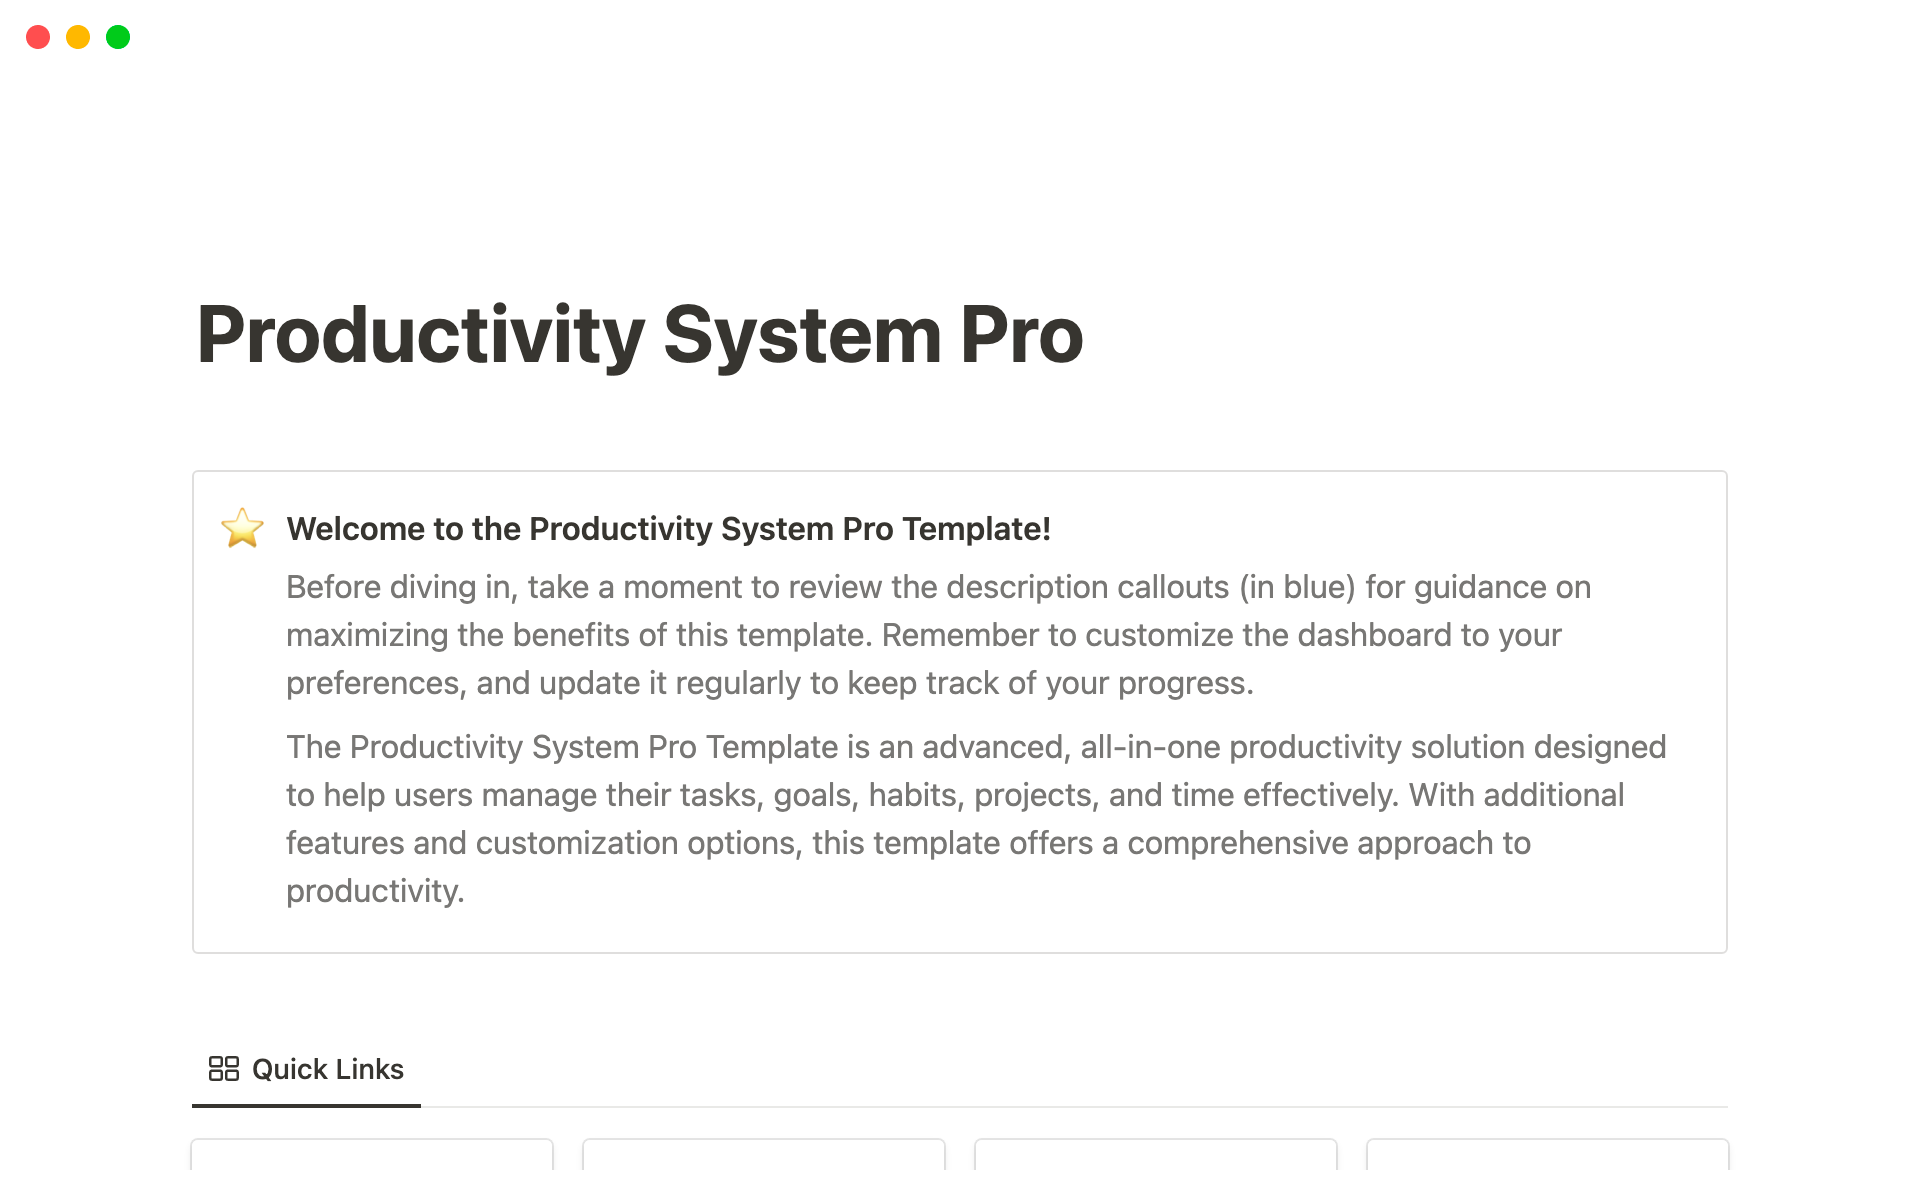 Uma prévia do modelo para Productivity System Pro